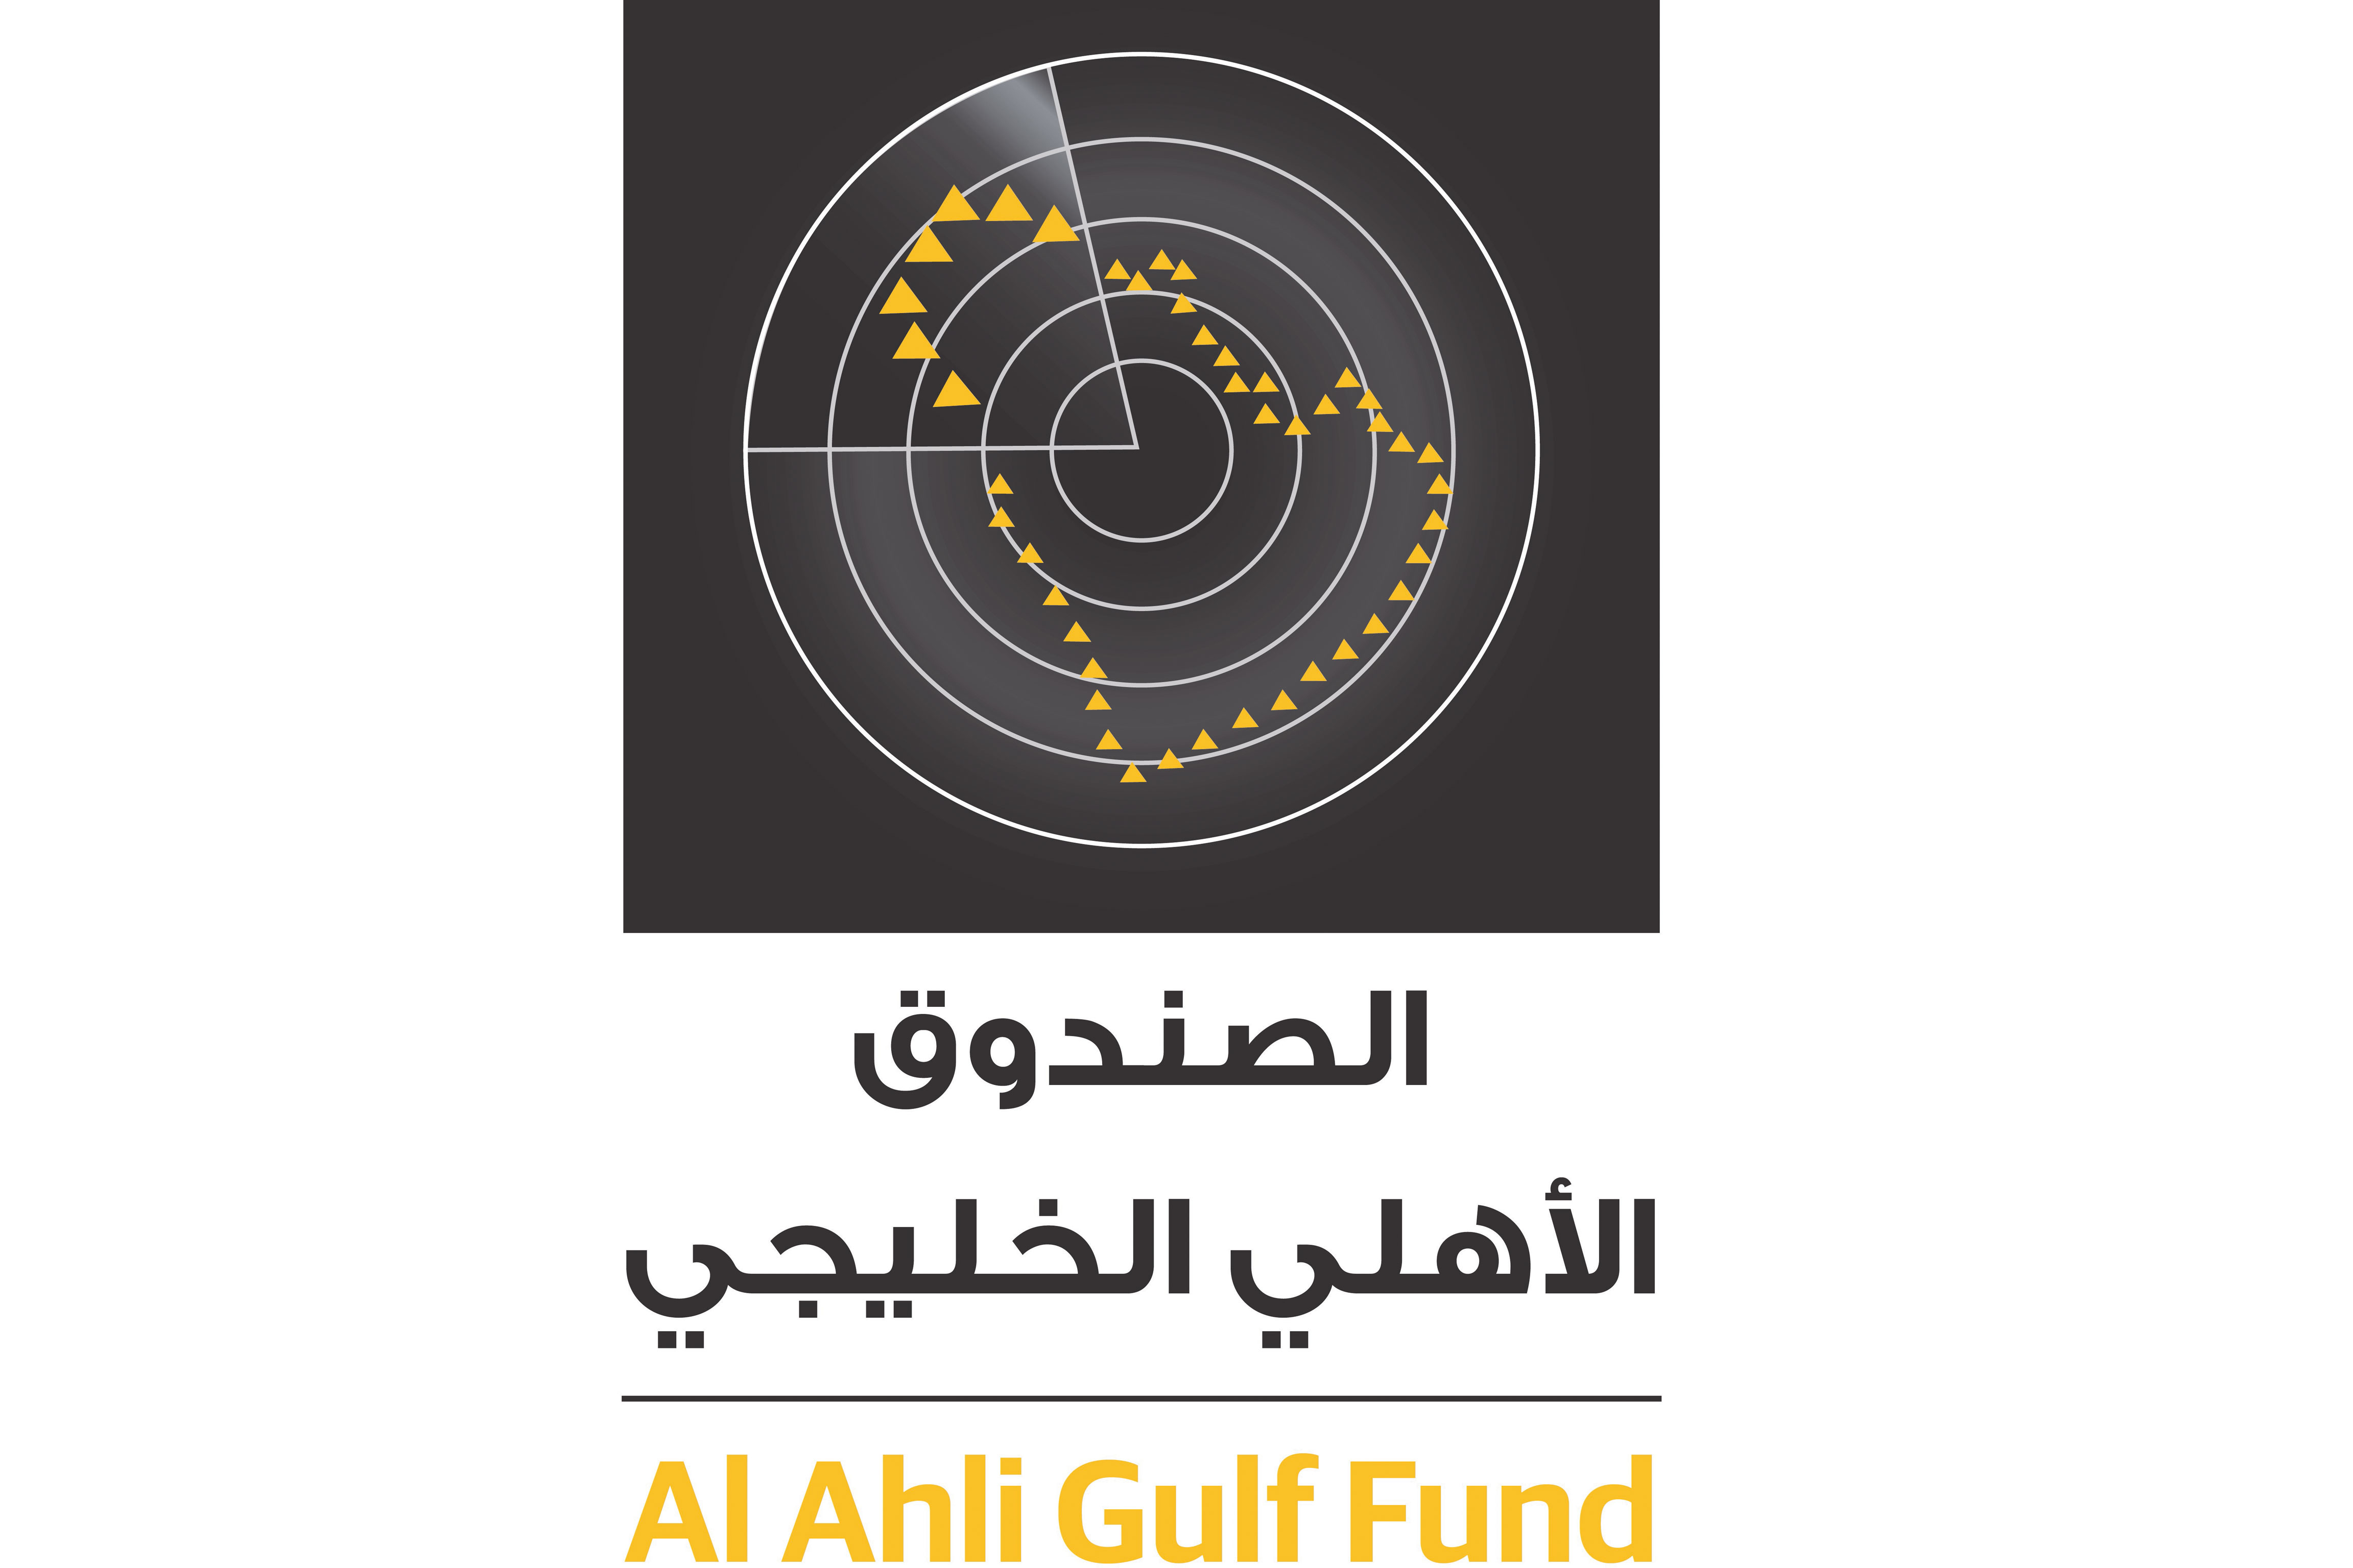 Notification to Al Ahli Gulf Fund unit holders